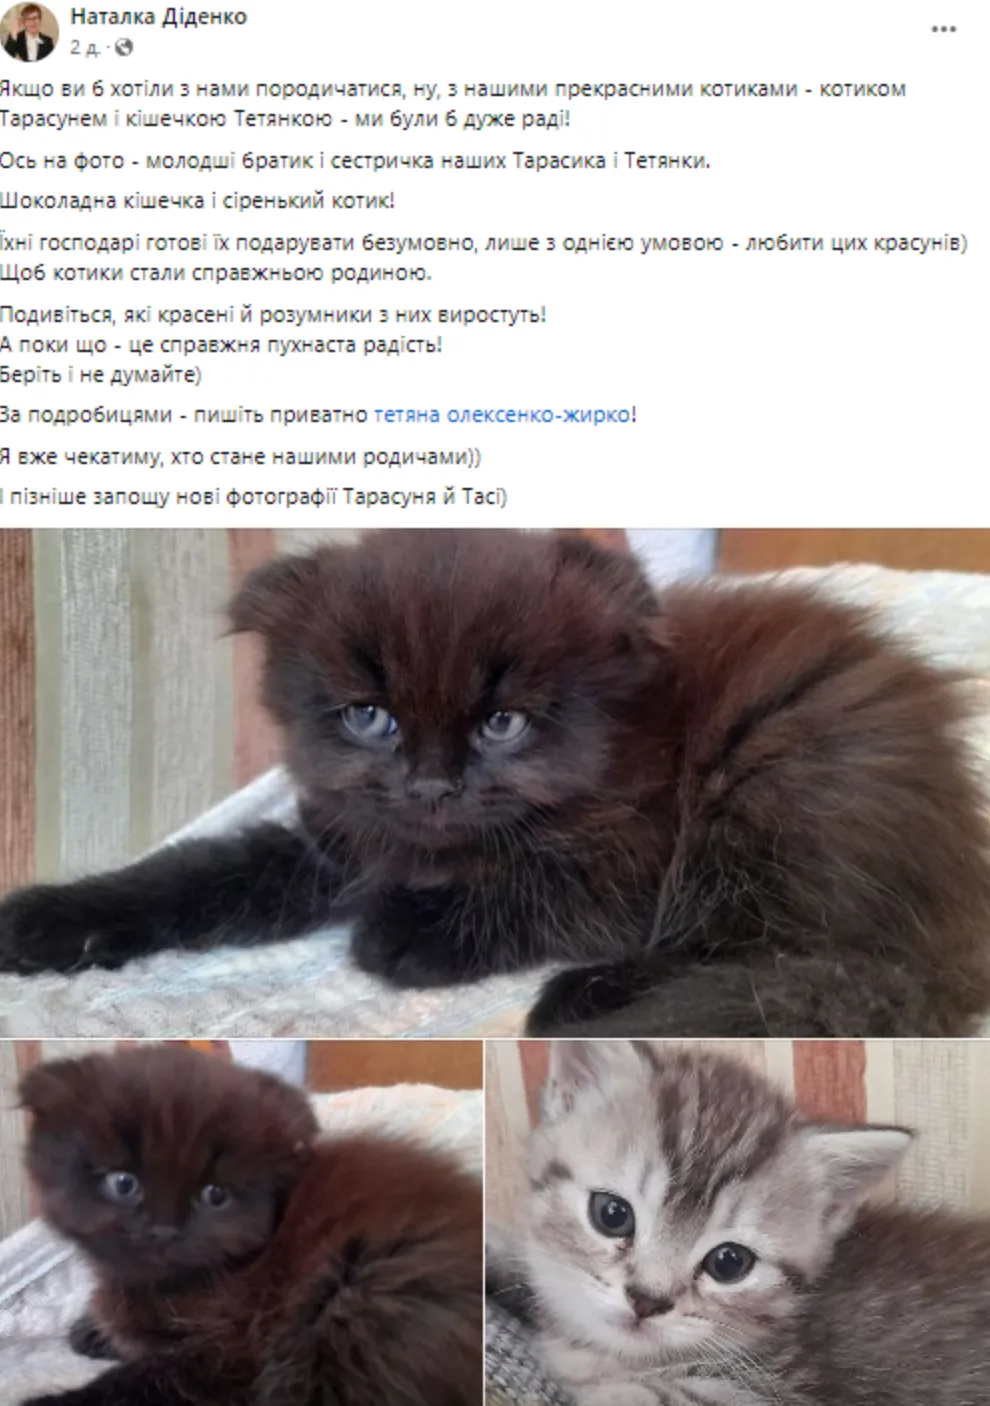 Диденко выставила пост о котятах